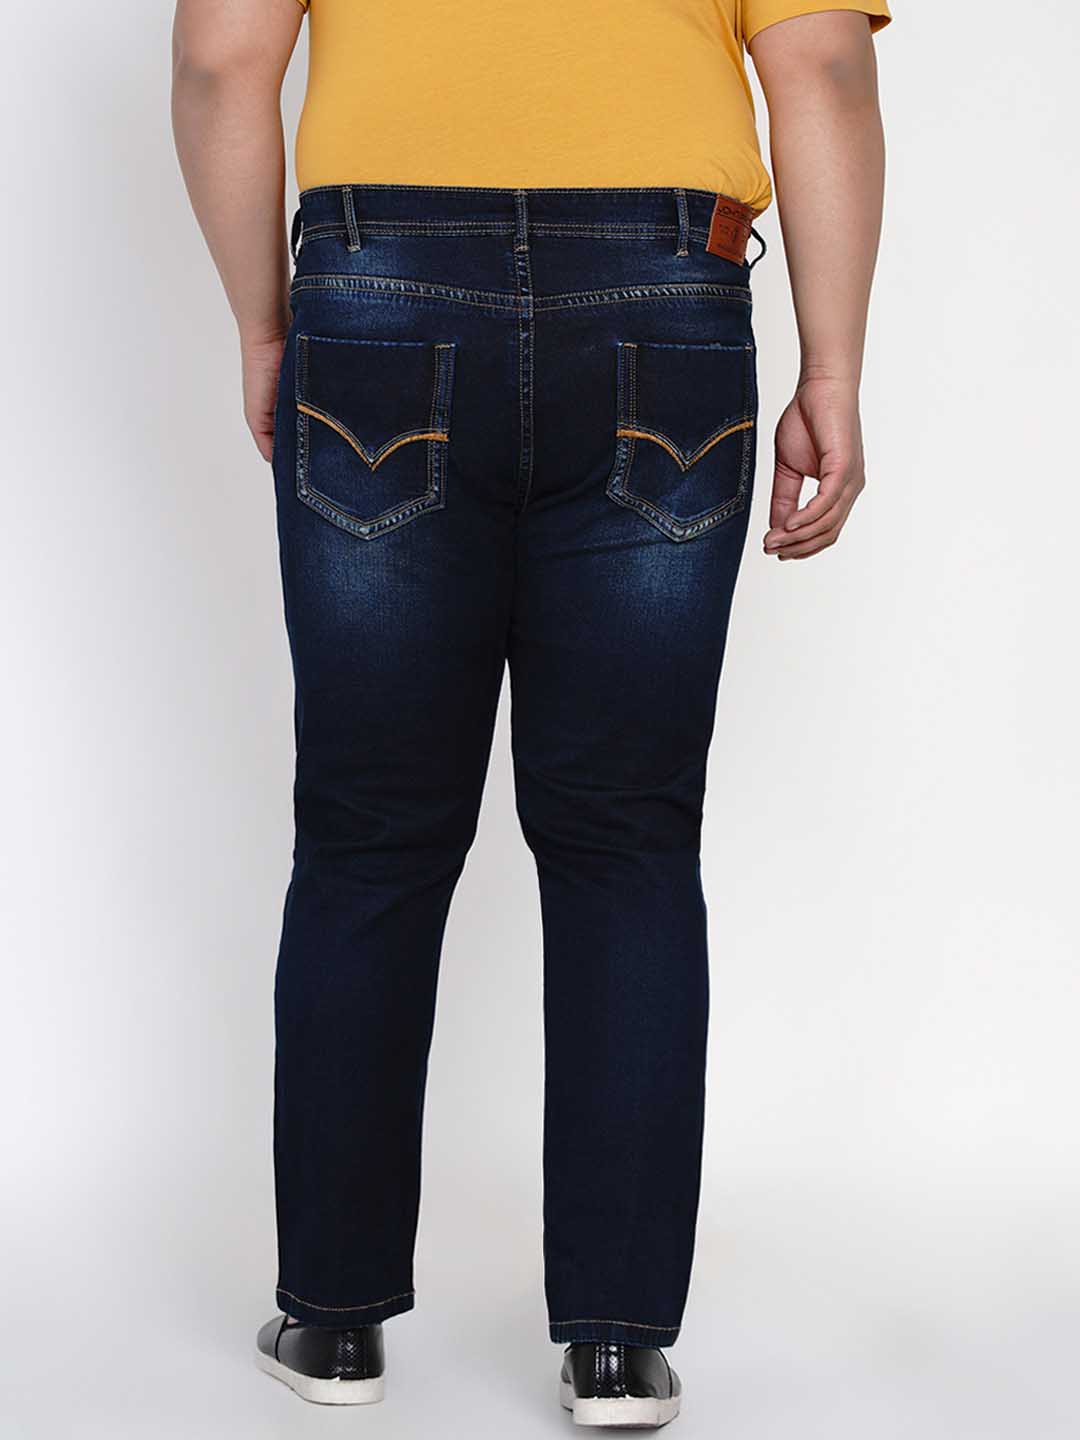 bottomwear/jeans/JPJ12113/jpj12113-4.jpg